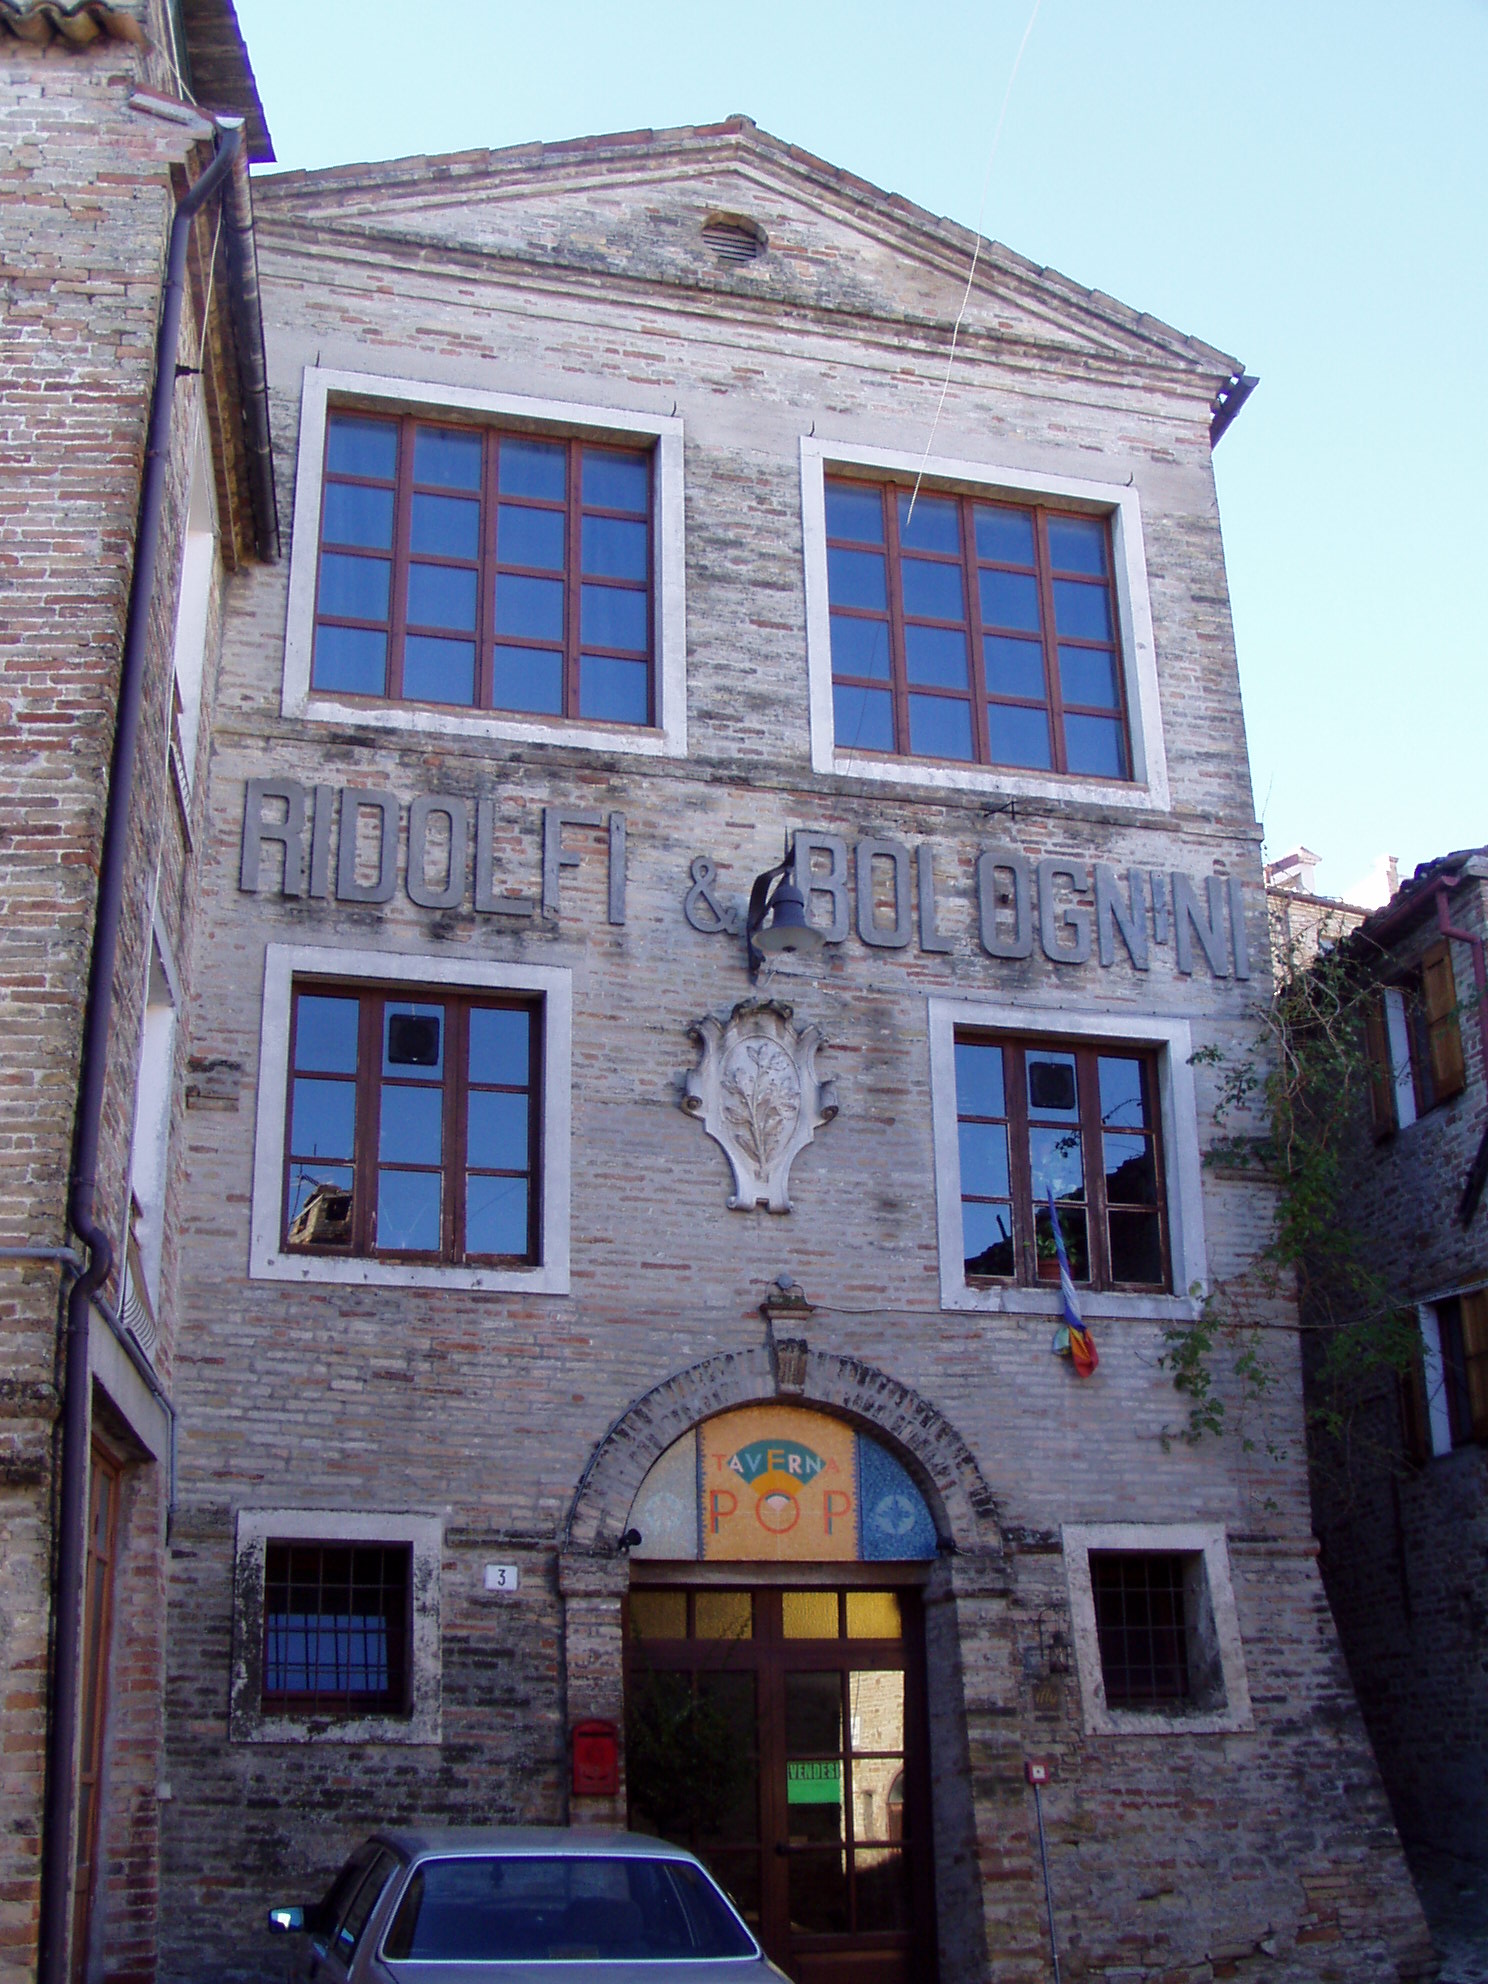 Palazzo Ridolfi Bolognini (palazzo, nobiliare) - Loro Piceno (MC) 